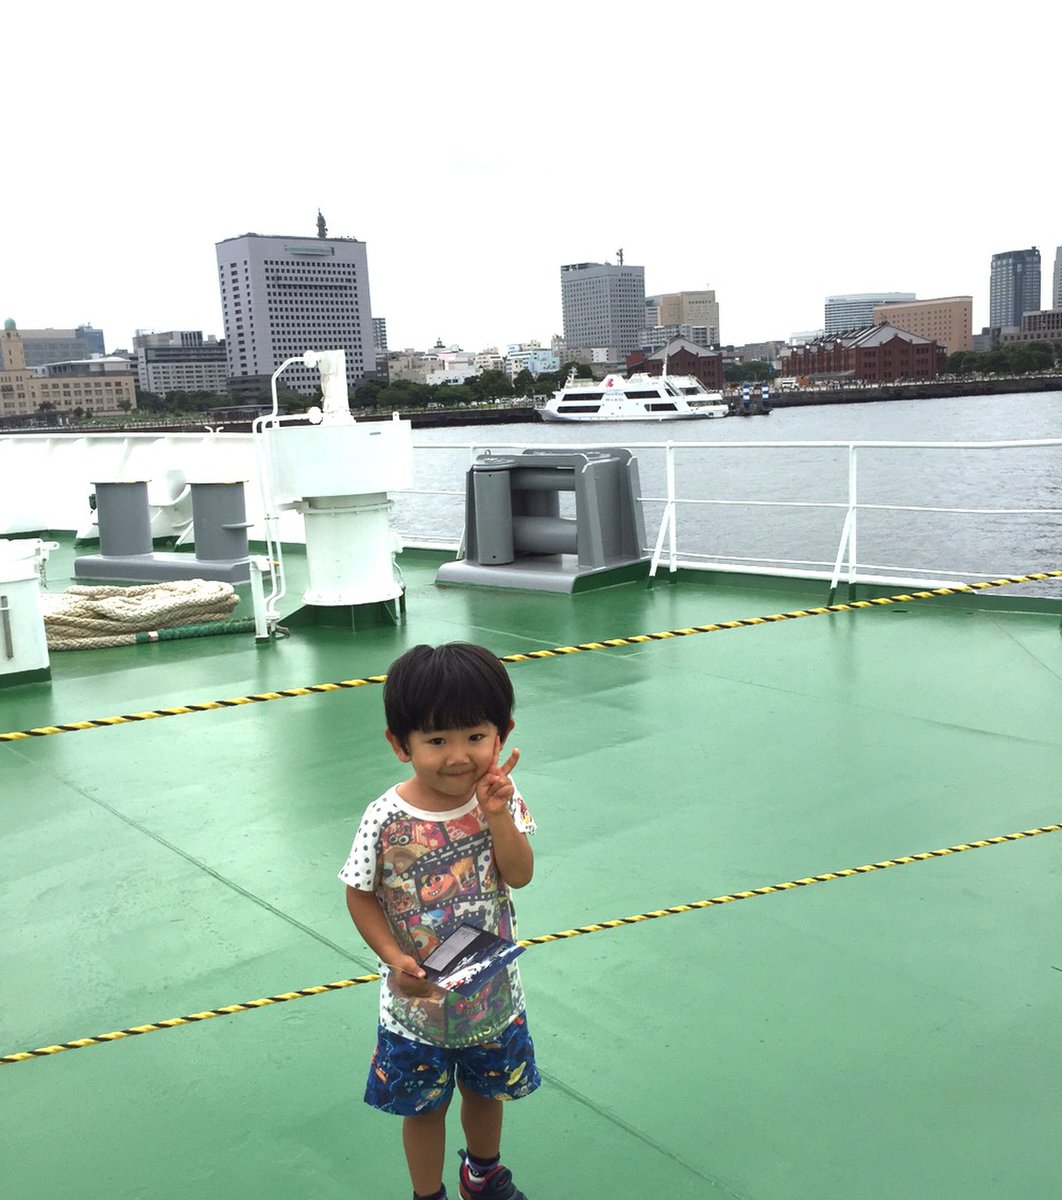 夏しかできないビアガーデン 横浜そごう屋上で食べ飲み放題ビアガーデンへ Playlife プレイライフ